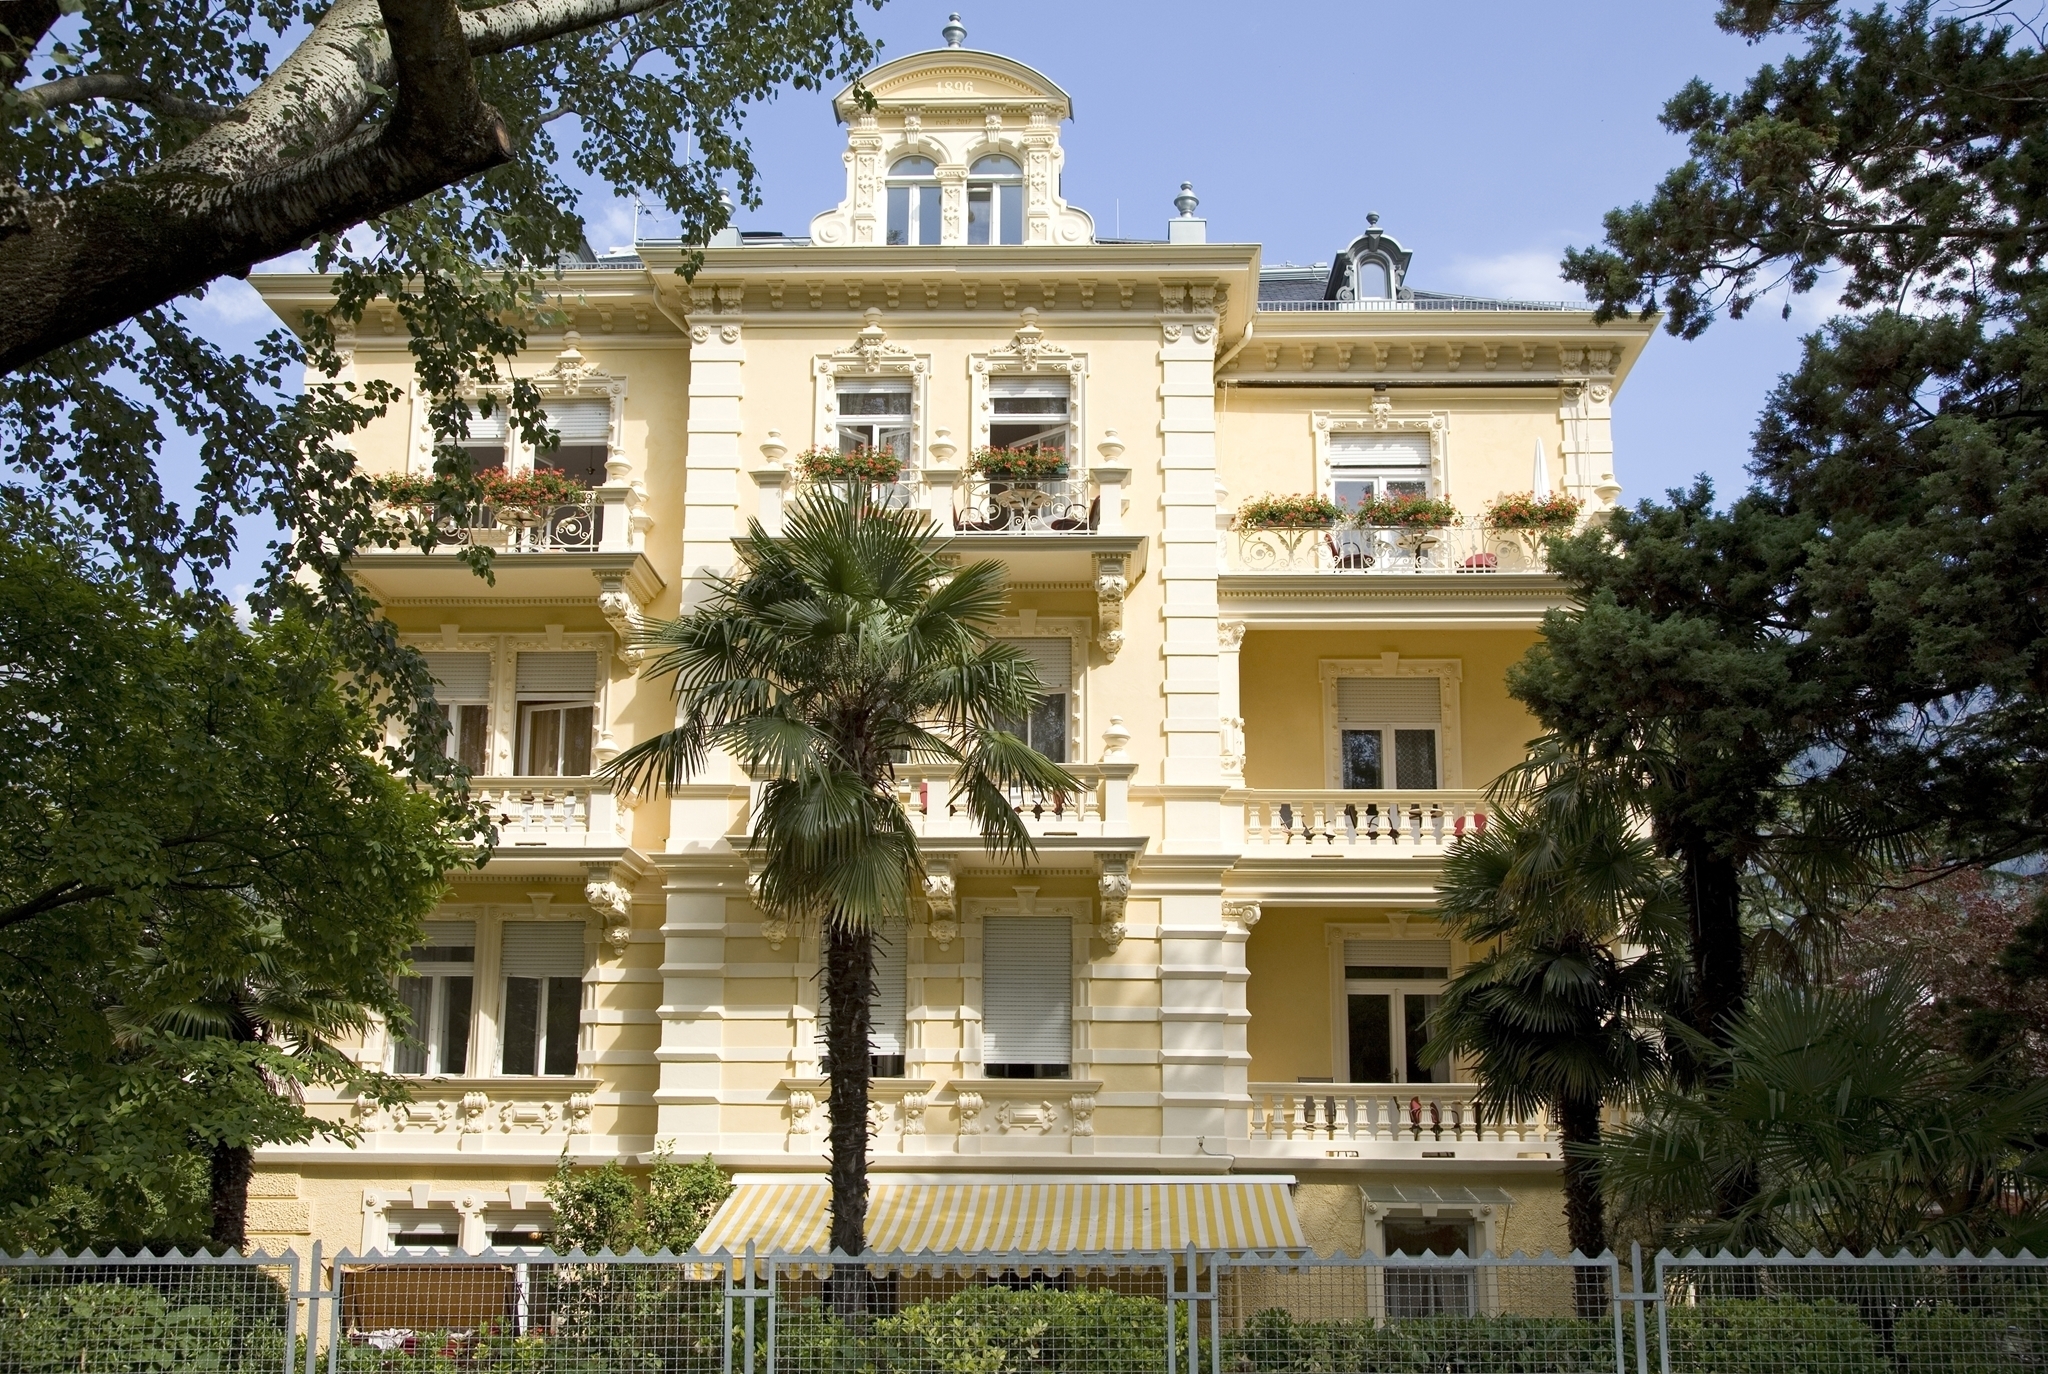 Hotel Villa Westend - Merano a Merano e dintorni